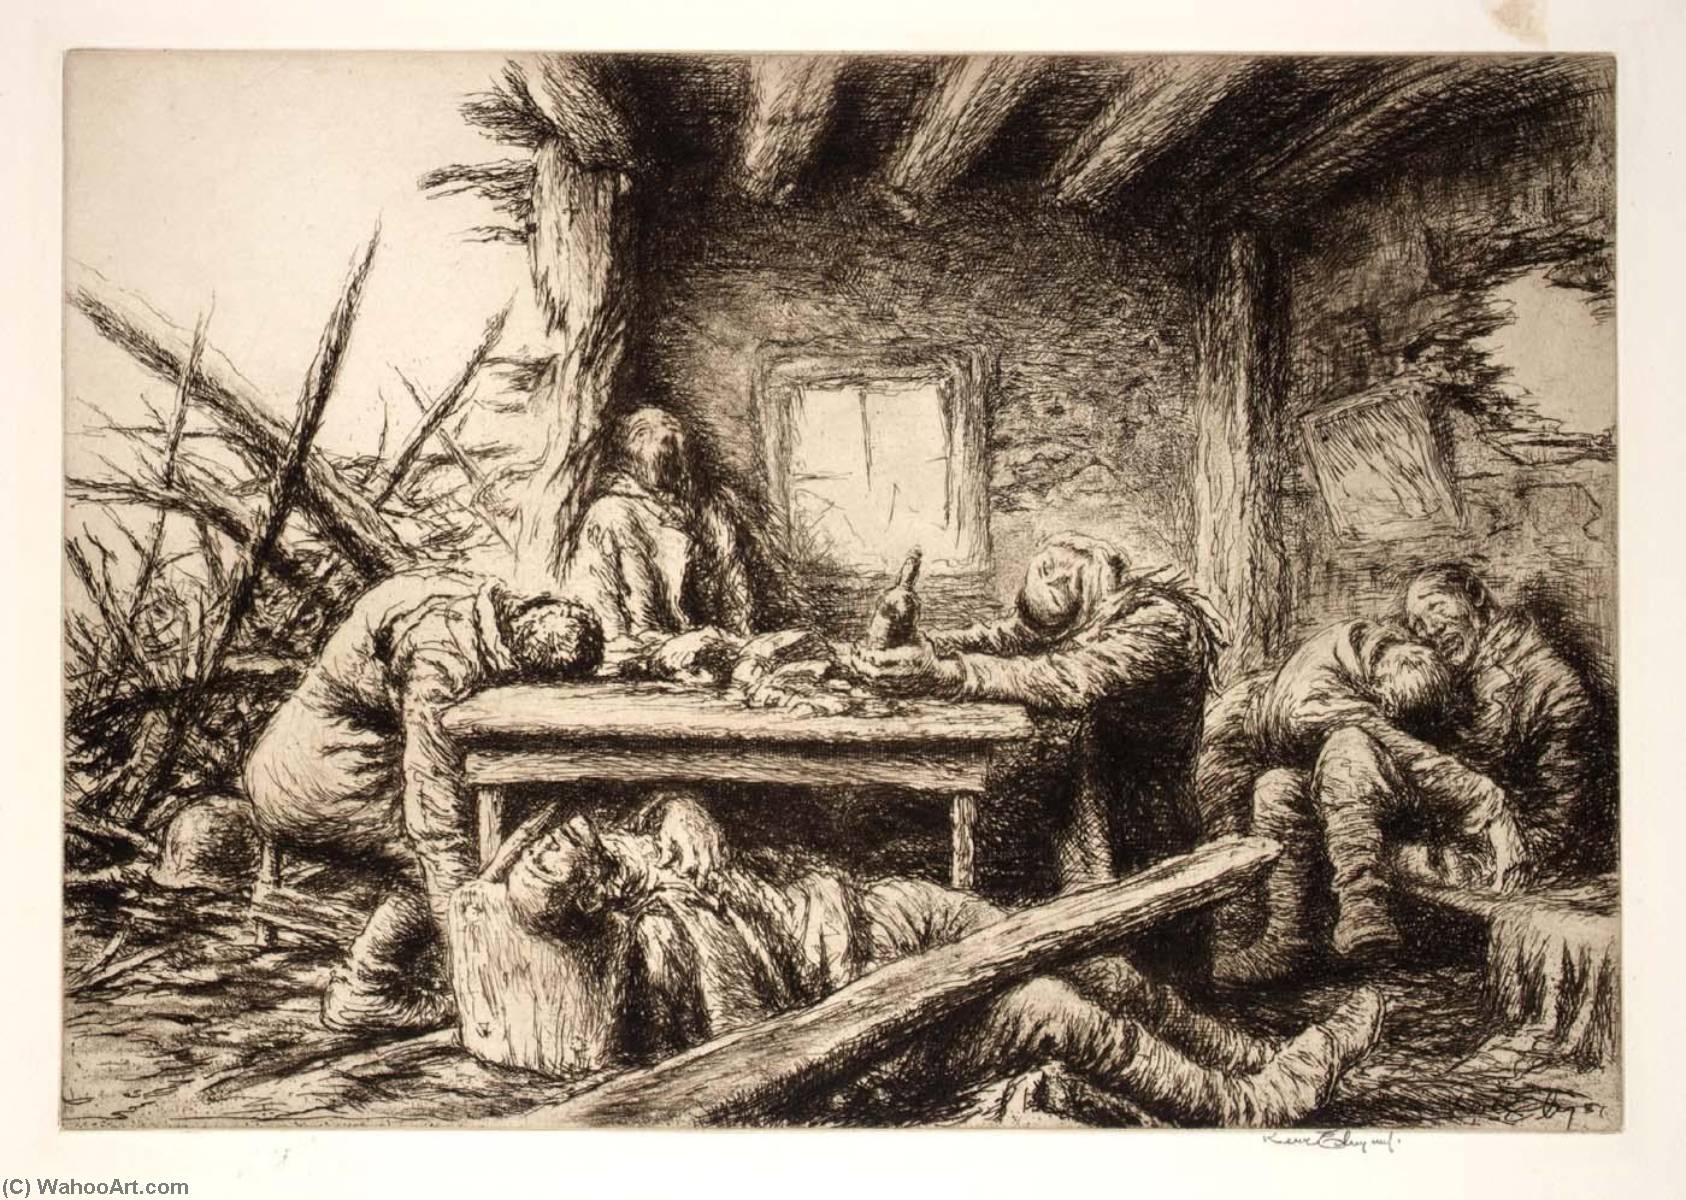 WikiOO.org - Encyclopedia of Fine Arts - Lukisan, Artwork Kerr Eby - The Last Supper